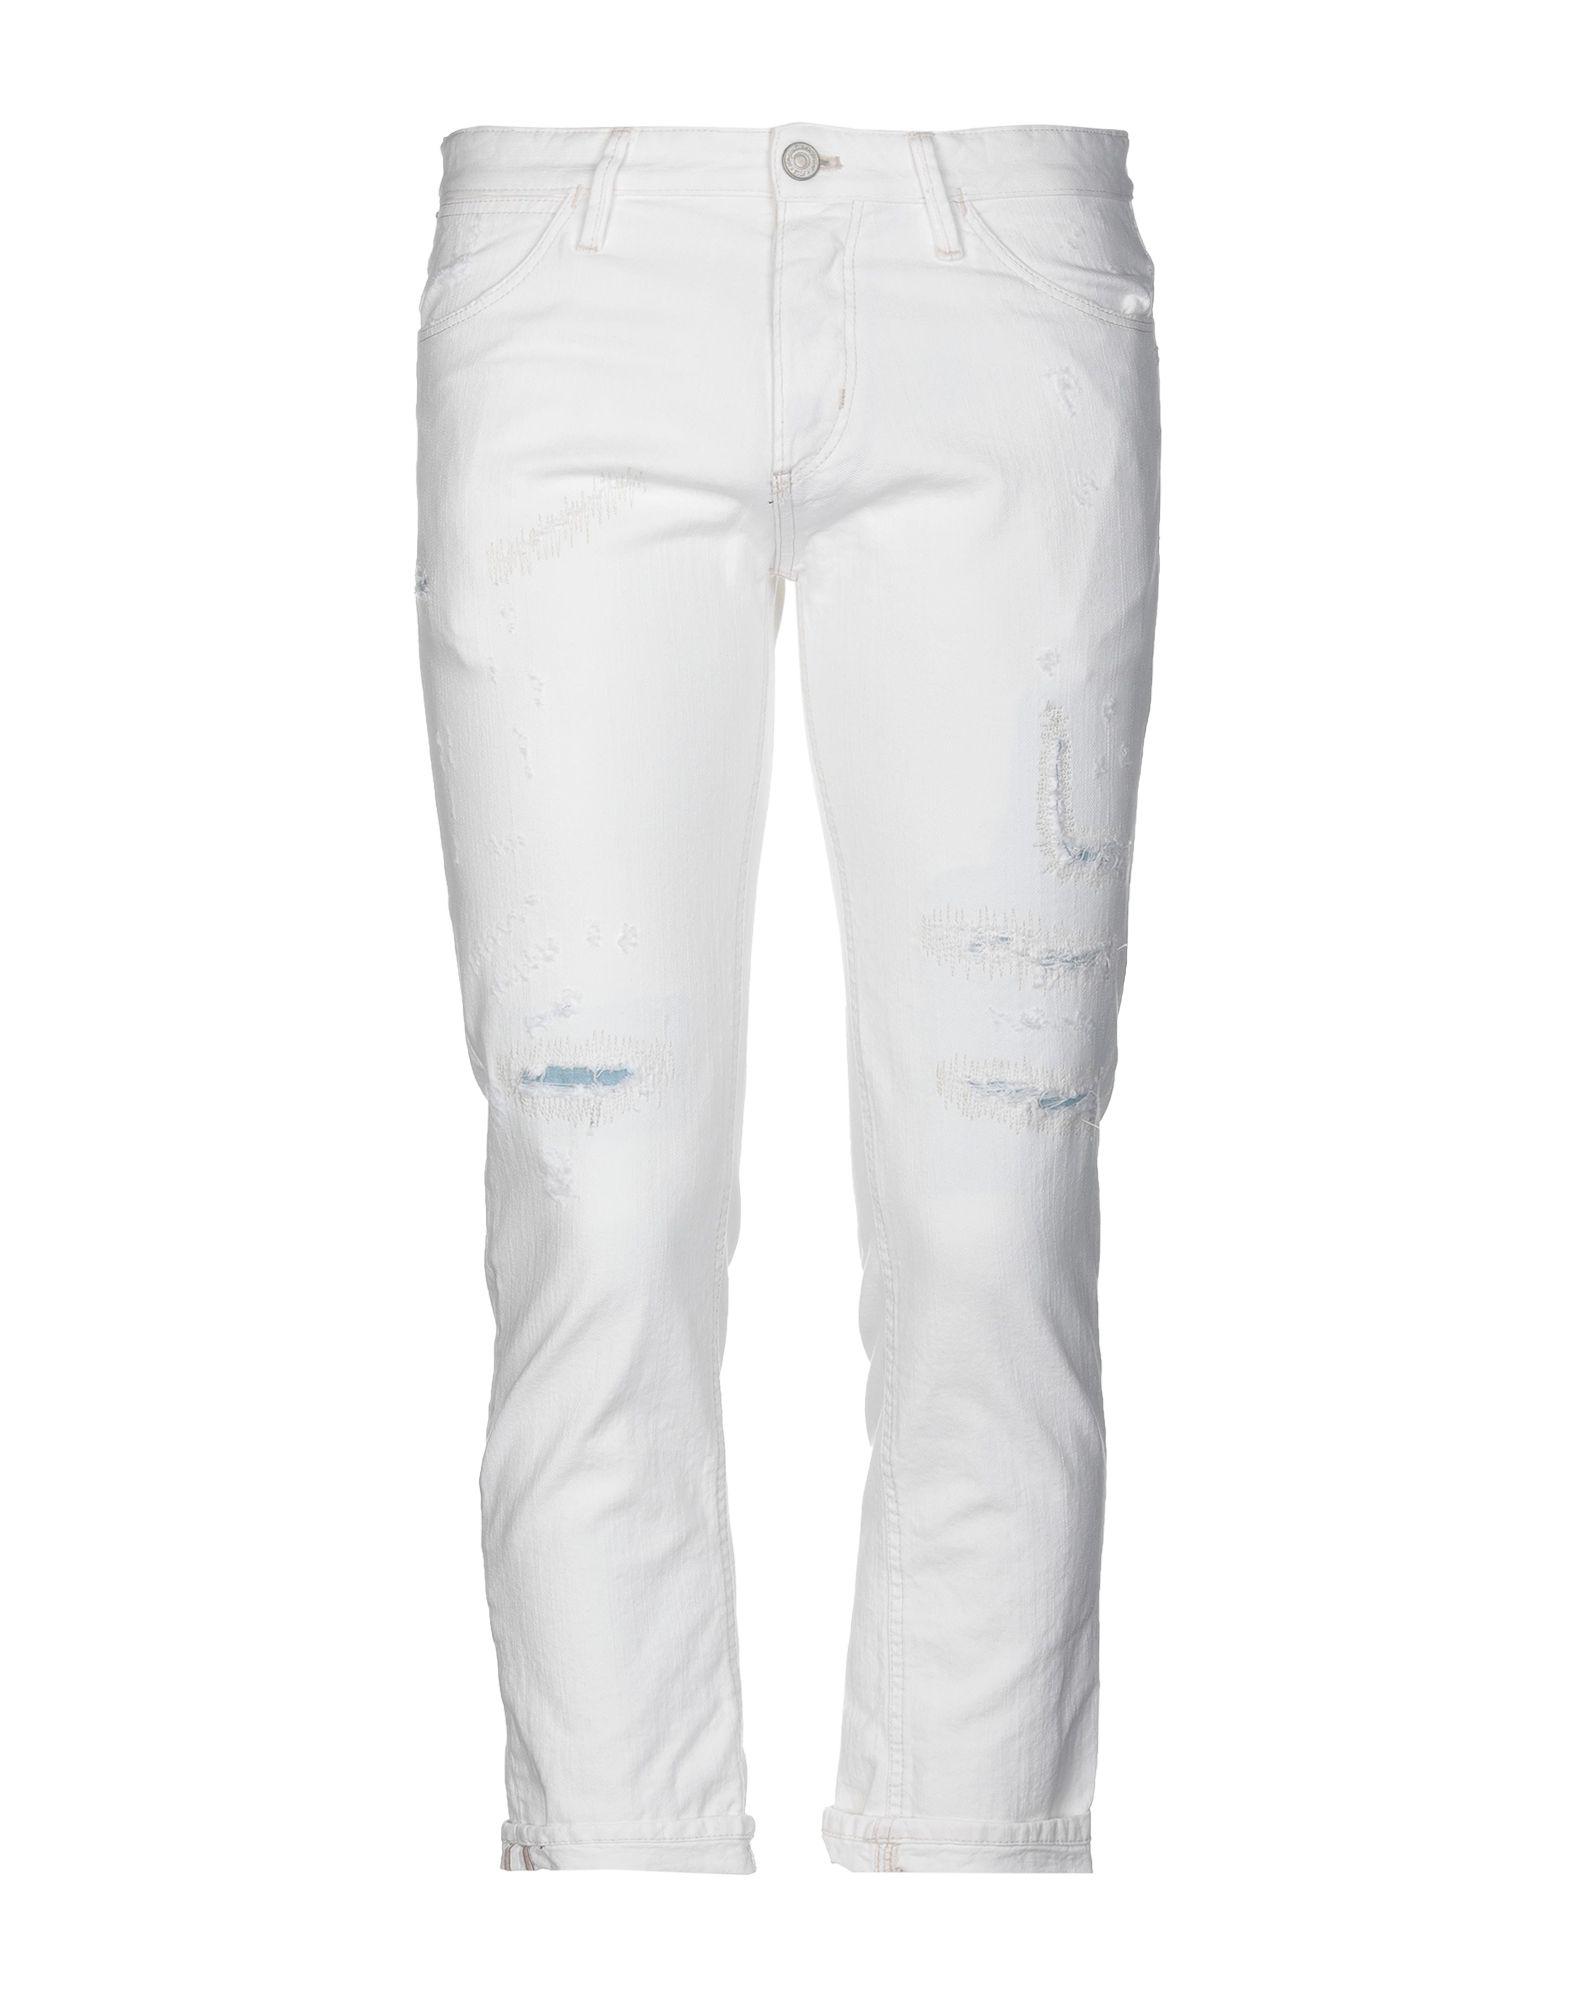 Pt05 Denim Pants in White for Men - Lyst